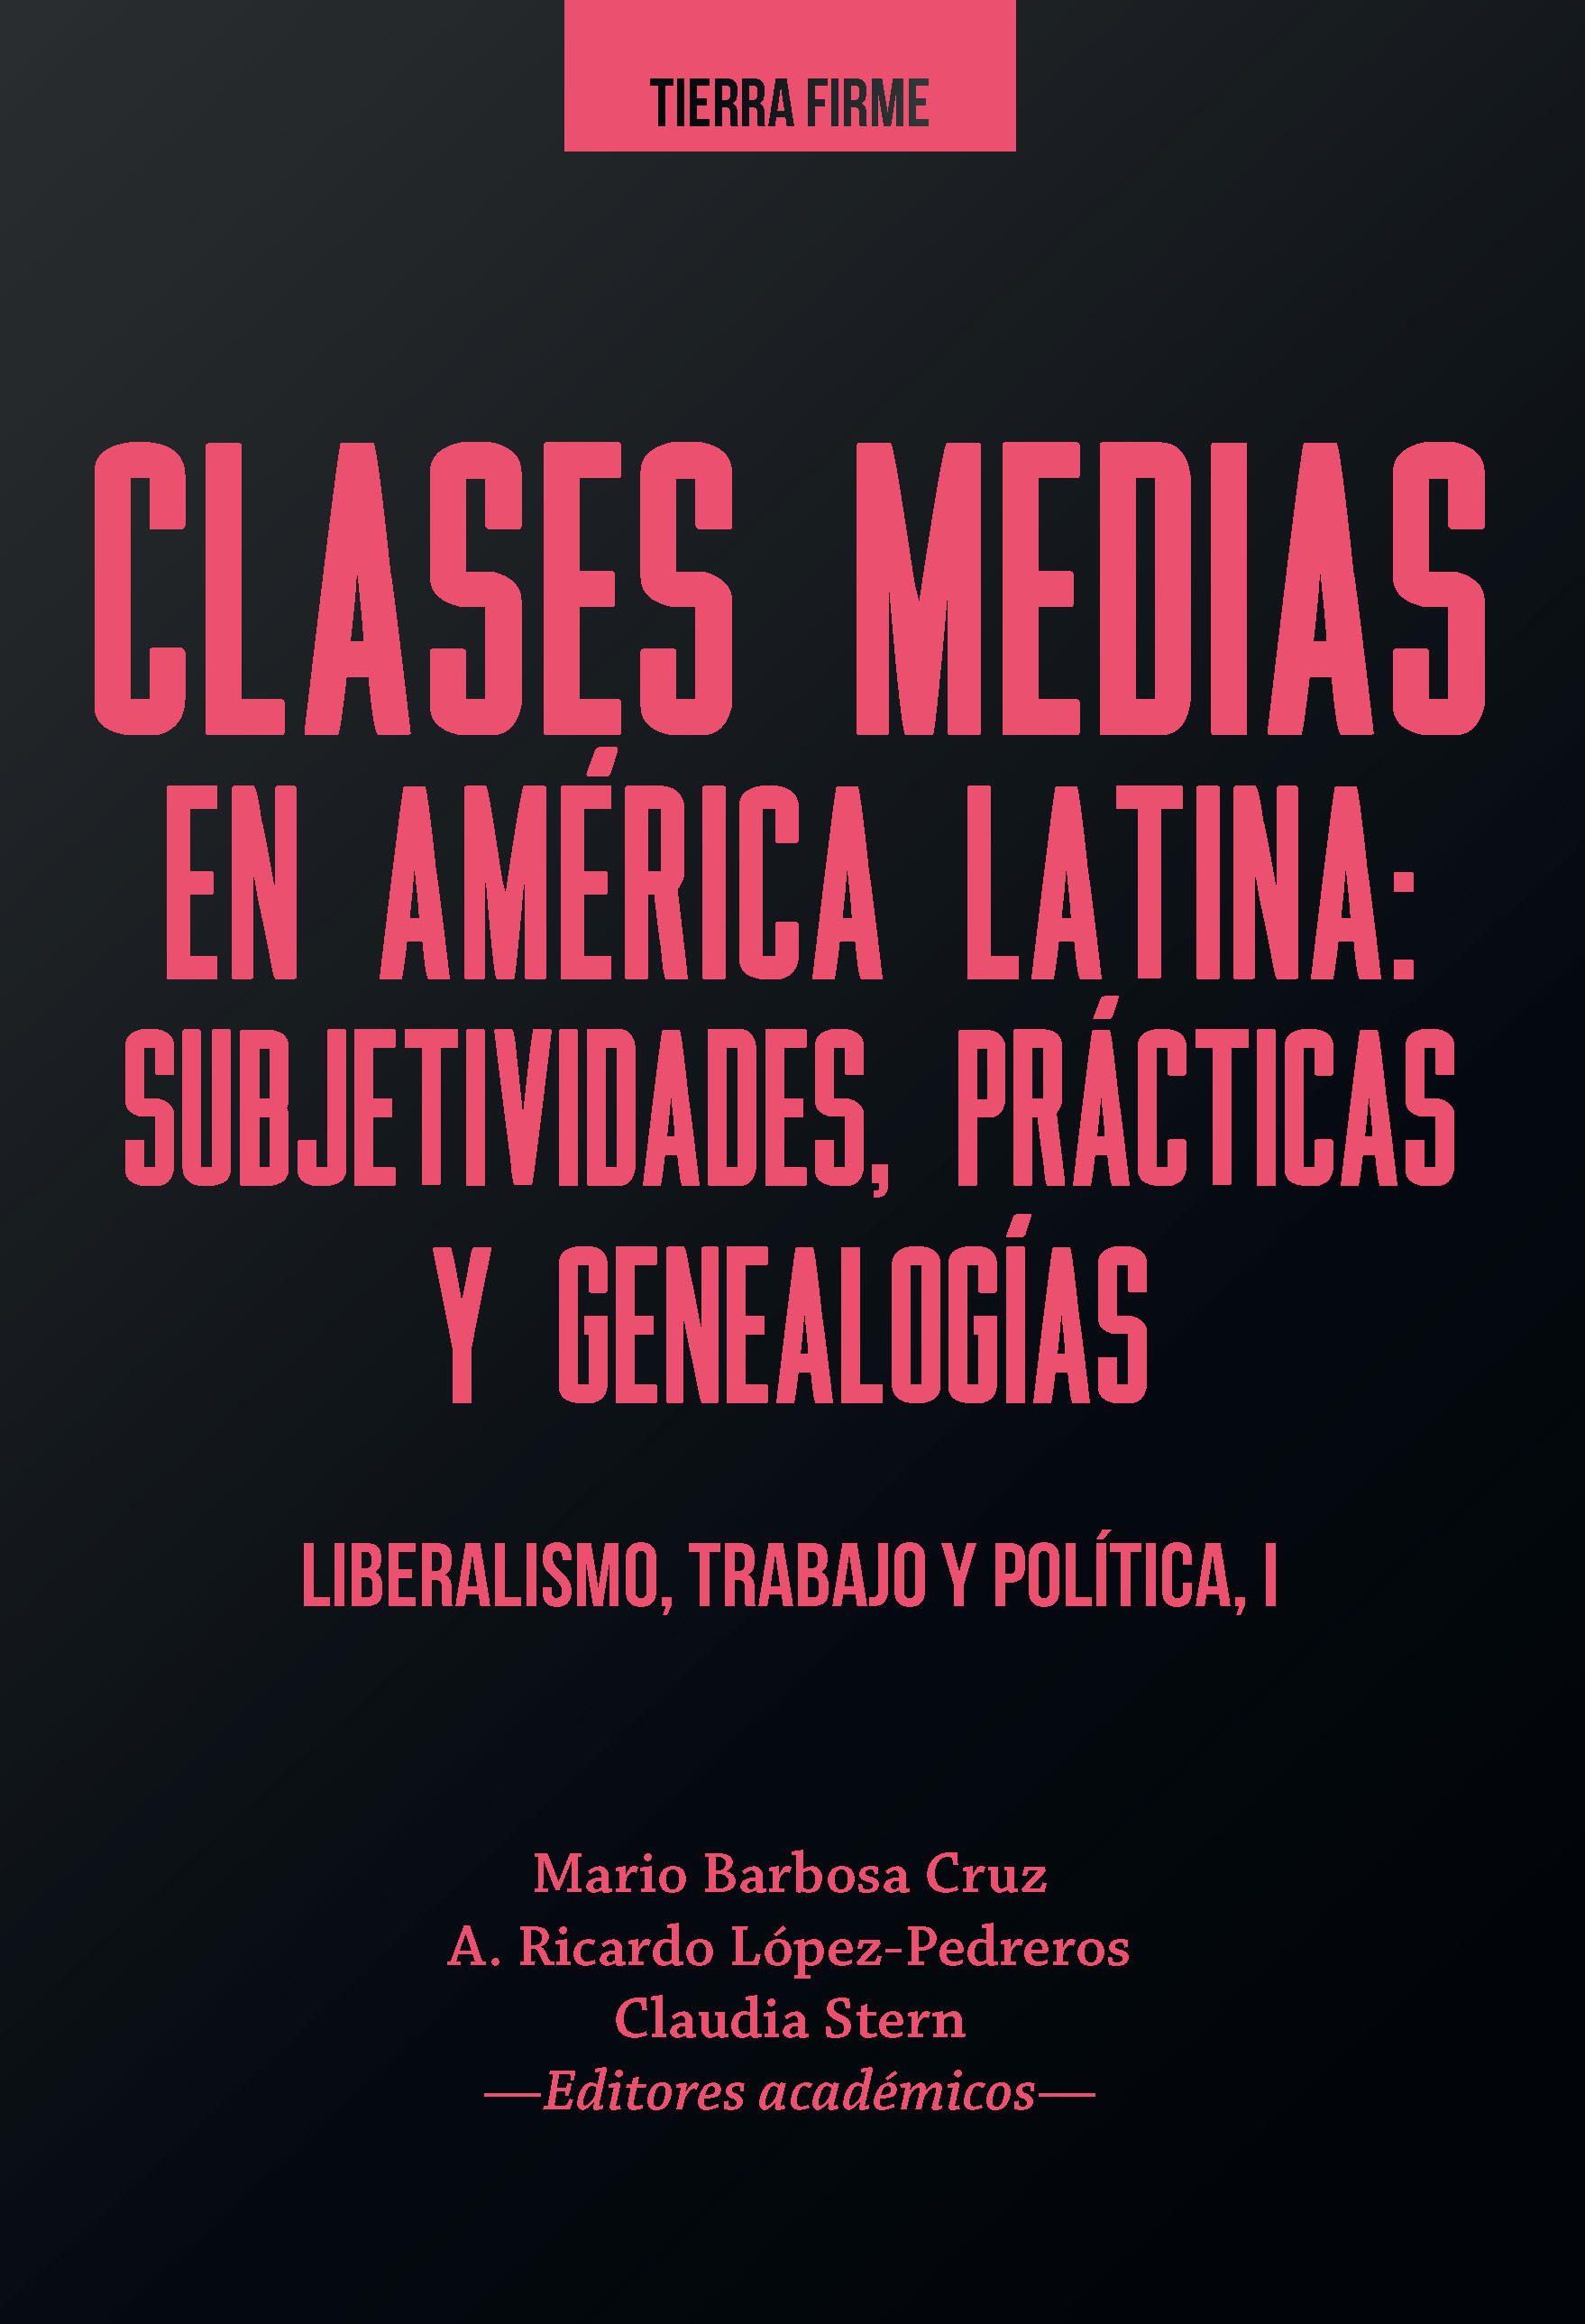 Imagen de portada del libro Clases medias en América Latina: